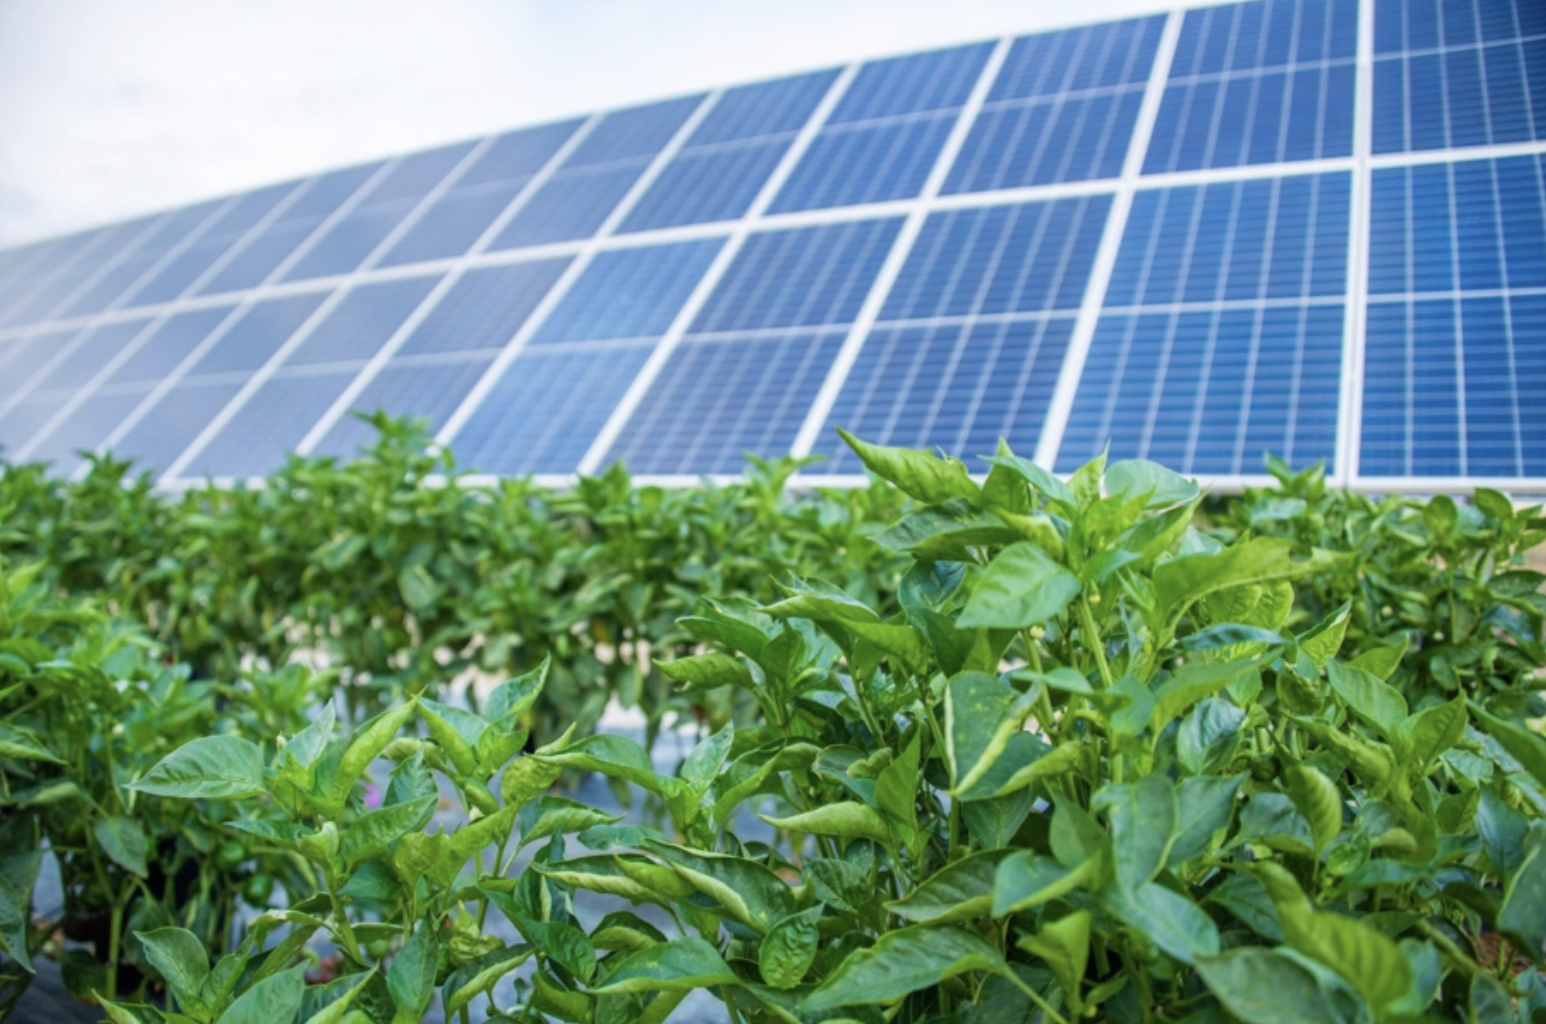 Fotografia ukazuje polia s fotovoltickými panelmi inštalovanými nad plodinami. Agrivoltaika kombinuje poľnohospodárstvo a výrobu energie, čím prispieva k udržateľnosti a znižovaniu emisií CO2.